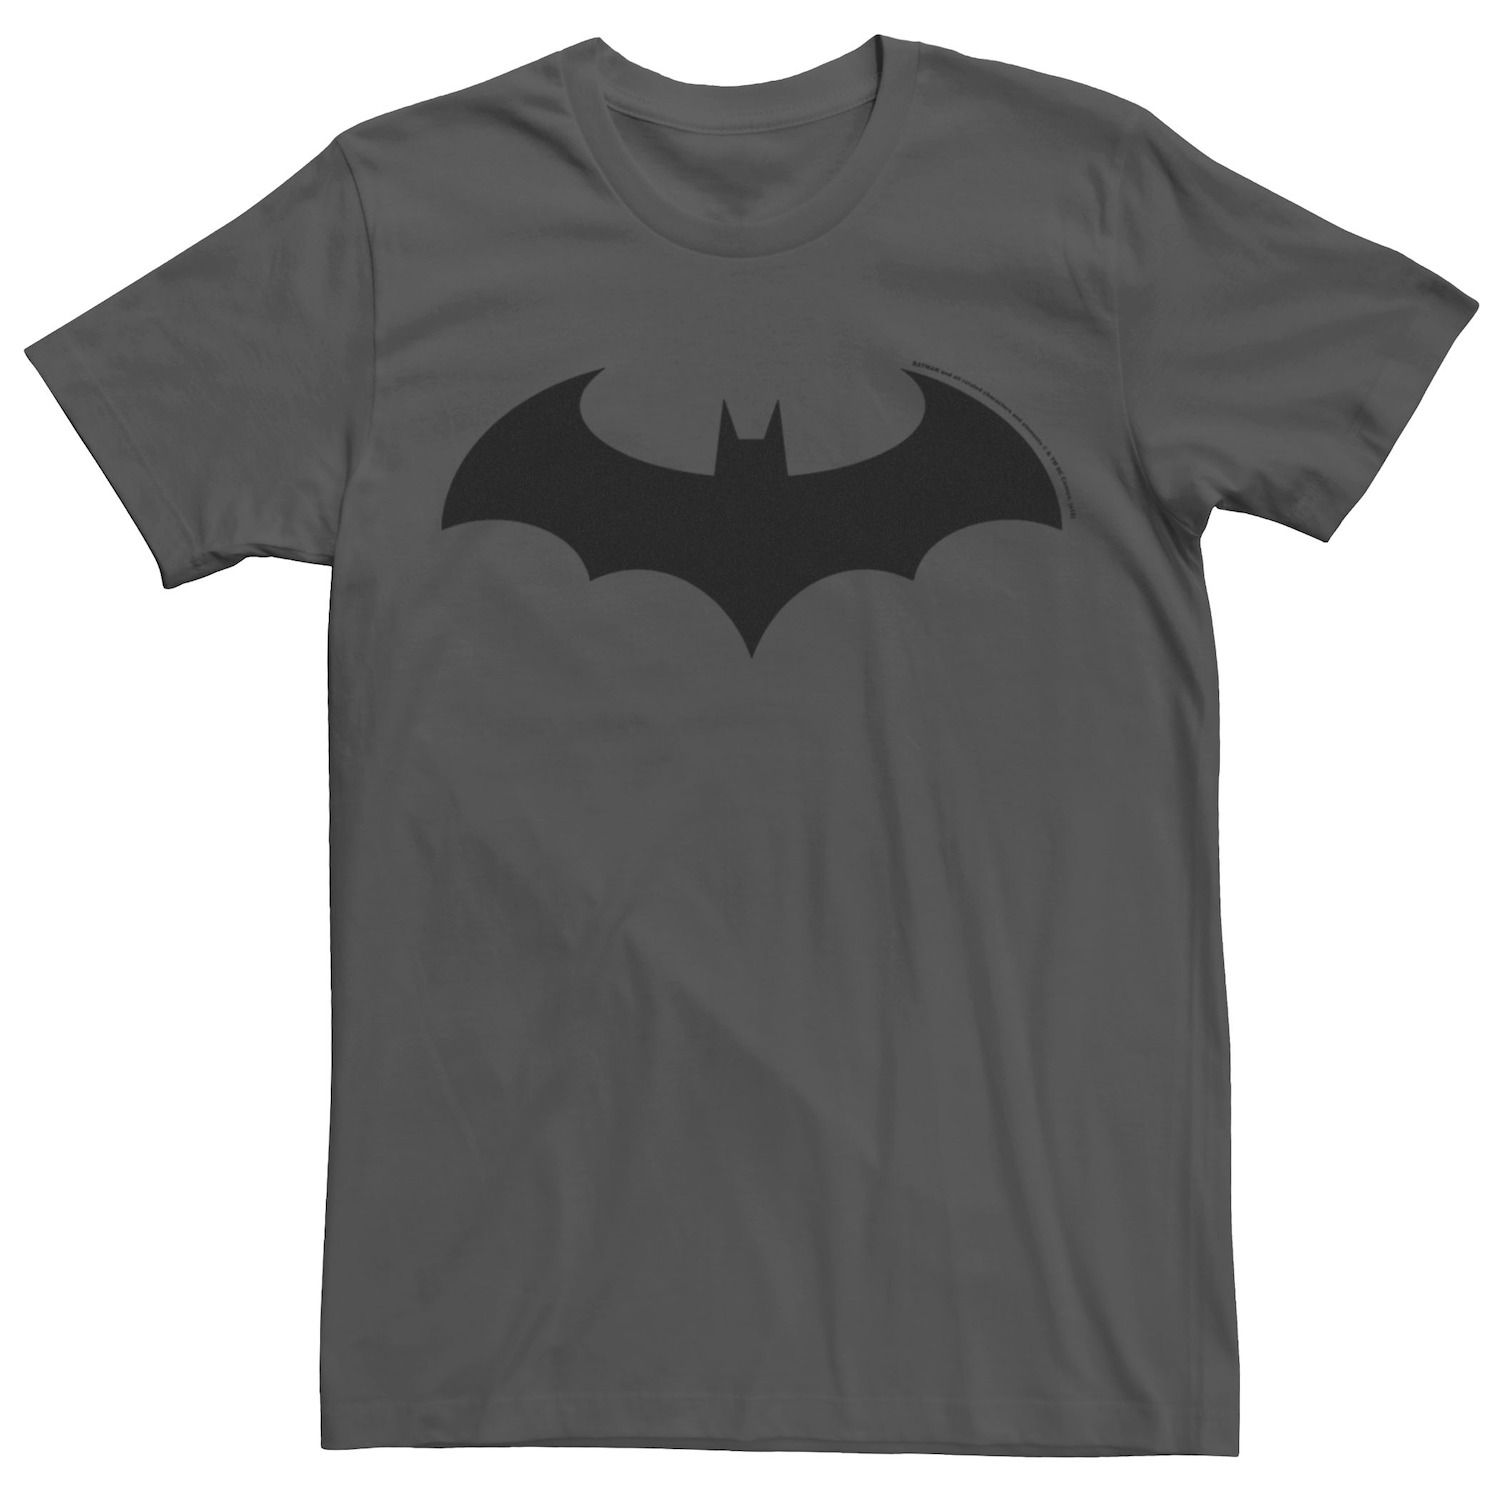 Мужская футболка с эмблемой Бэтмена в современном стиле на груди DC Comics